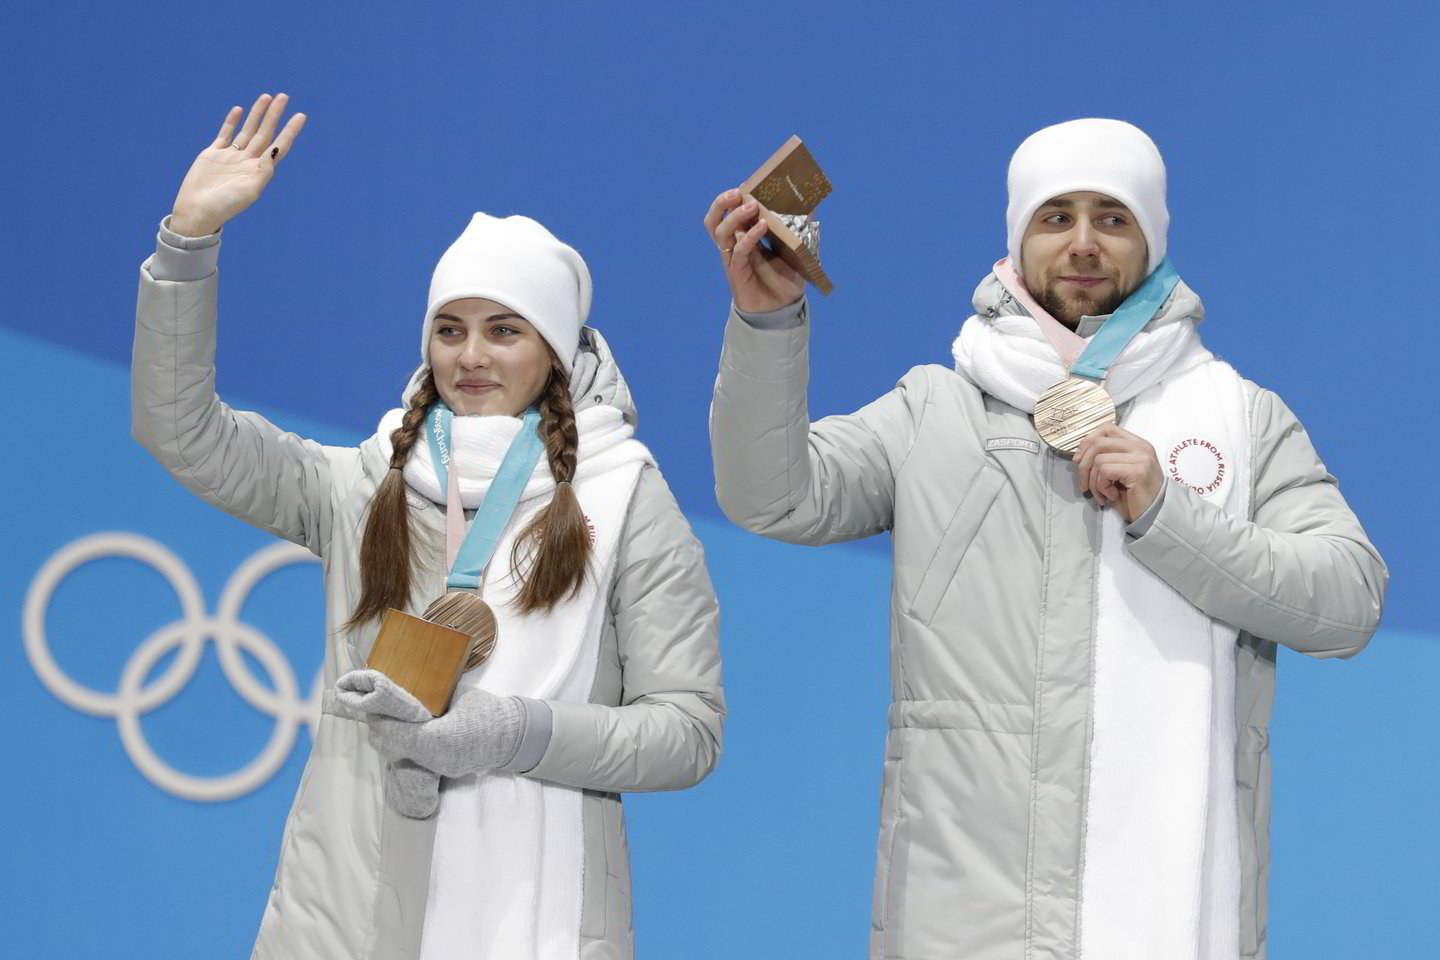  A.Krušelnickis oficialiai pripažintas vartojęs dopingą Pjongčango olimpiadoje<br> AFP nuotr.